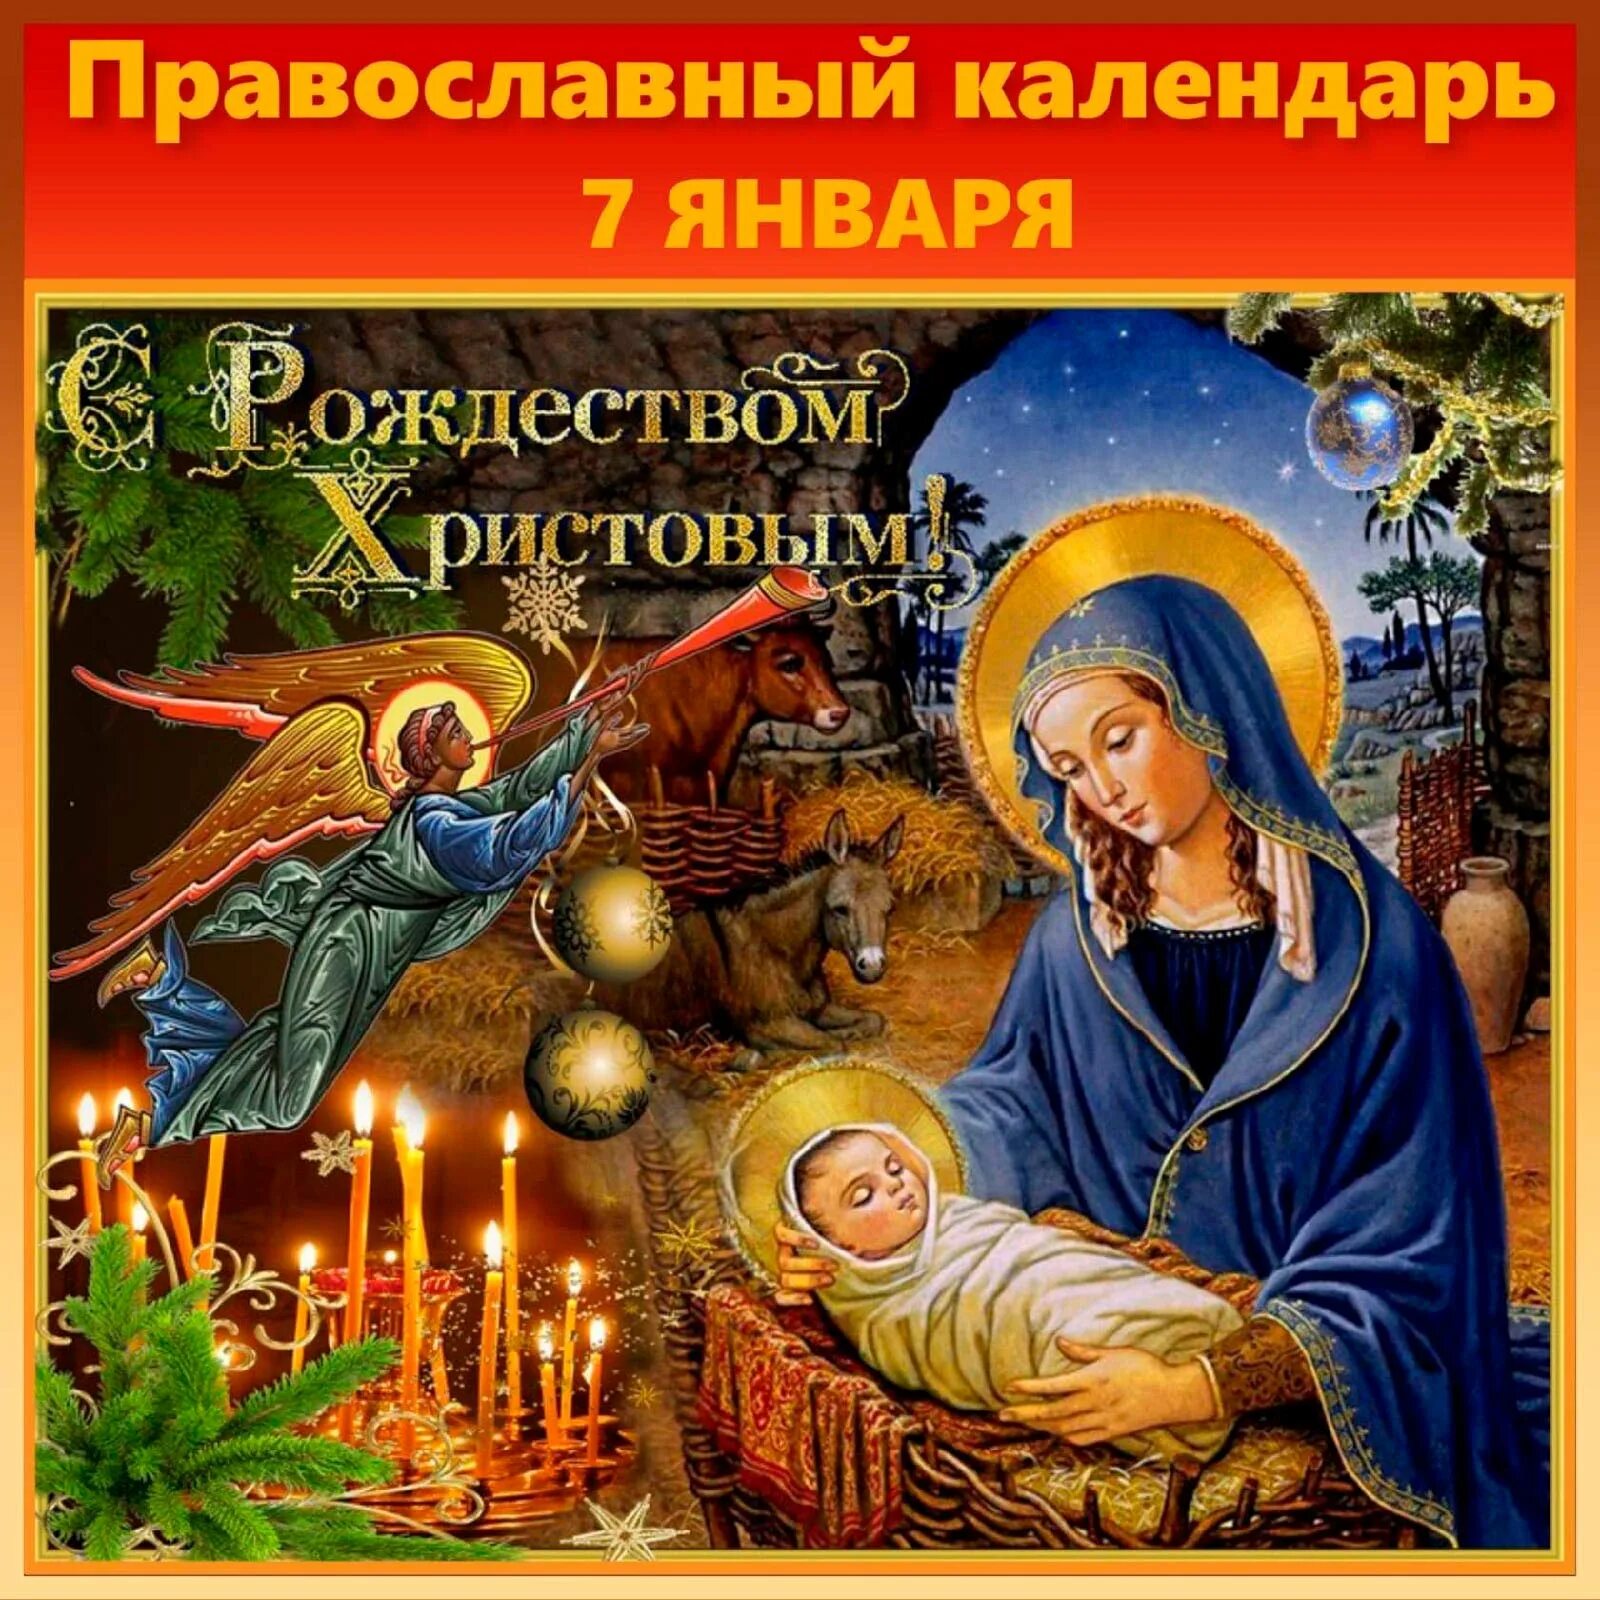 5 6 7 января. Рождество Христово. Поздравление с Рождеством. С Рождеством Христовым открытки. Поздравление с Рождеством крестовым.